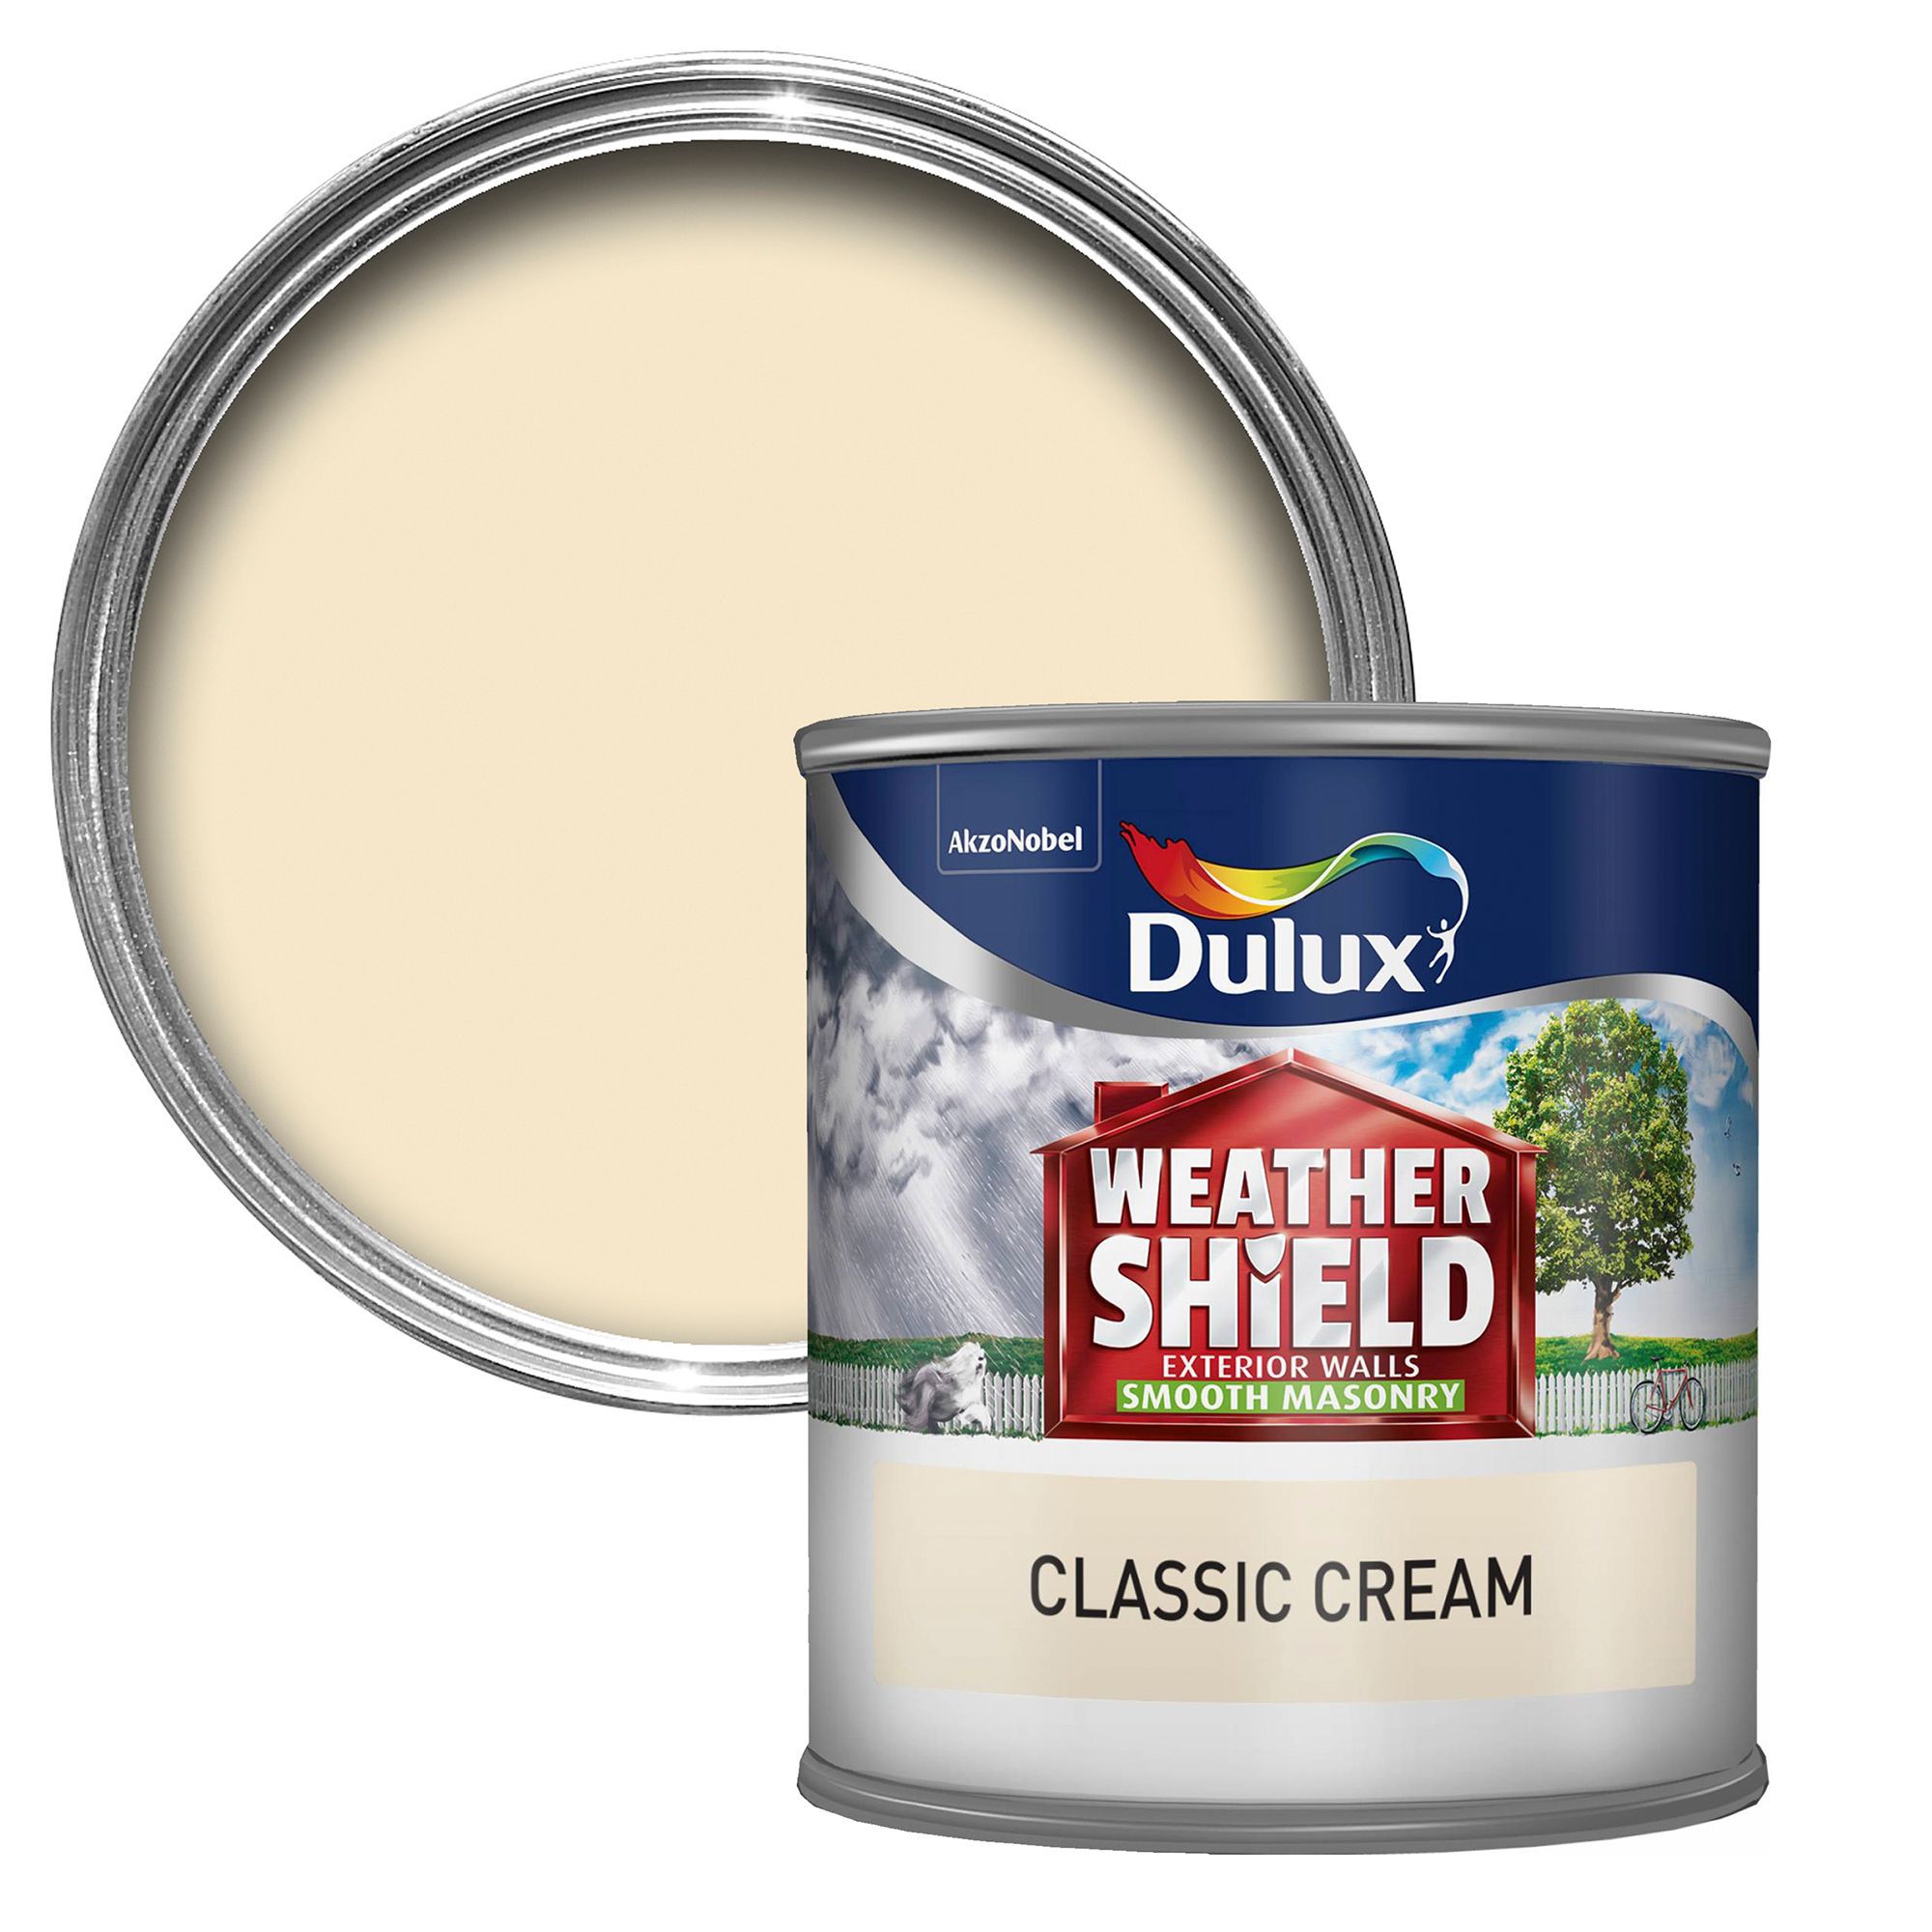 Dulux Cream Homecare24